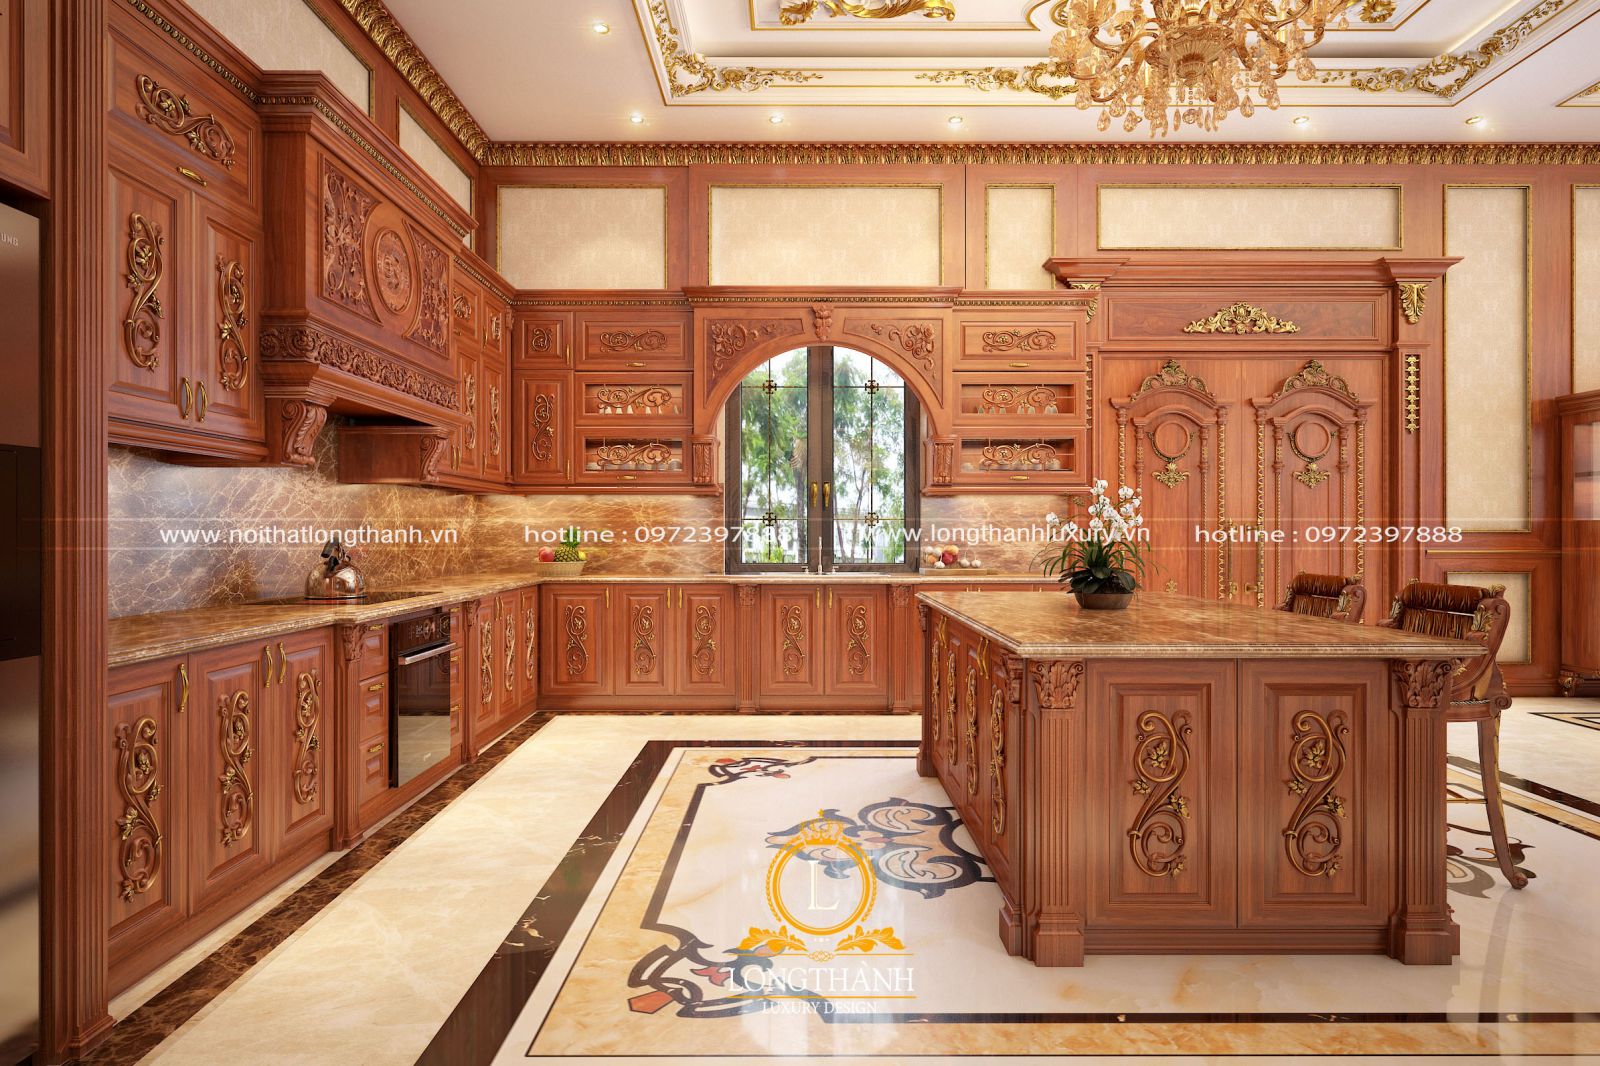 Bộ tủ bếp tân cổ điển được thiết kế thể hiện sự tinh tế, sang trọng và lộng lẫy